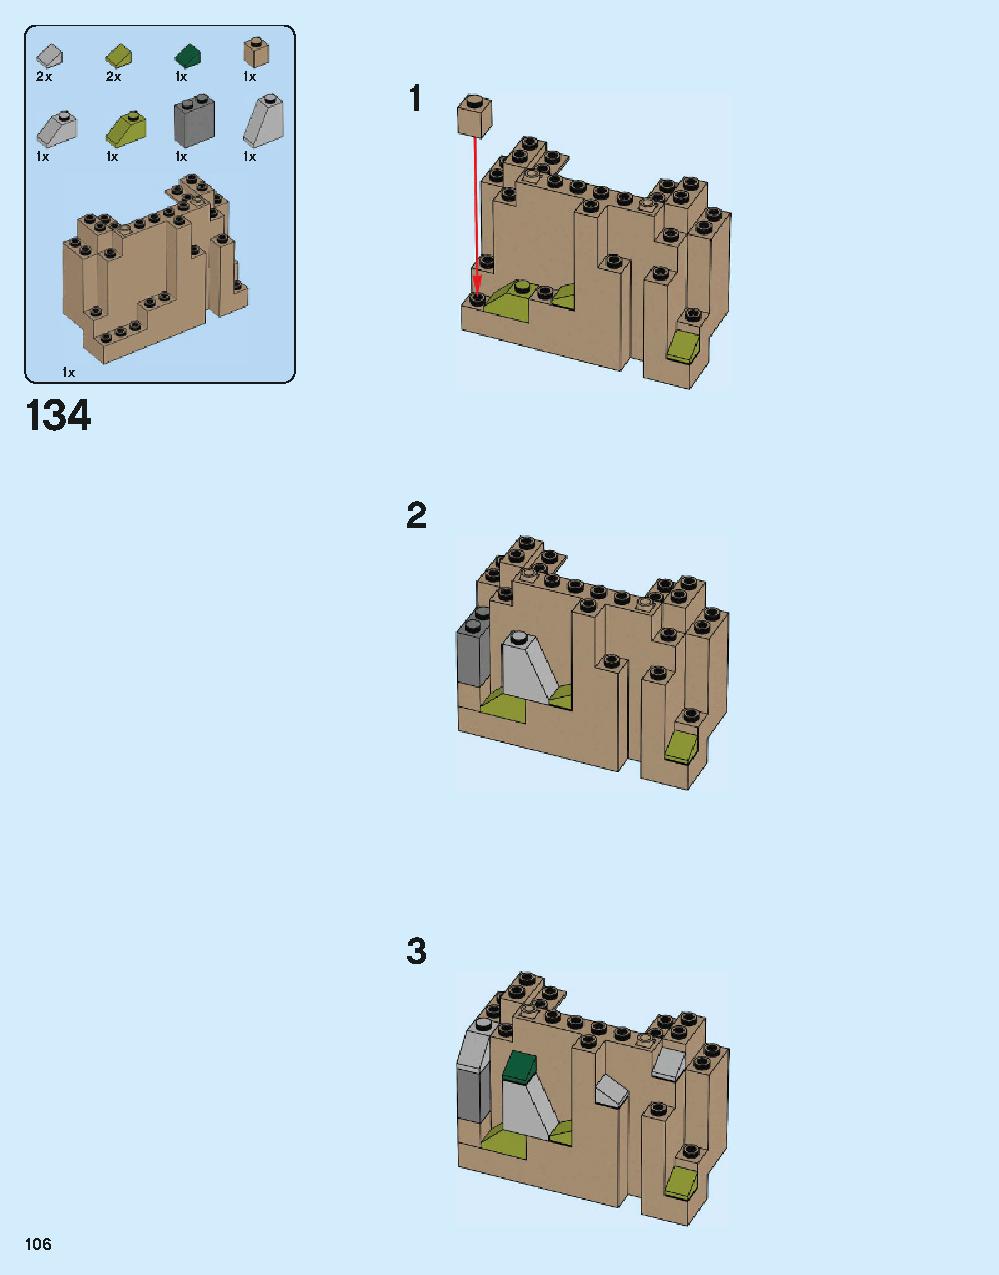 ホグワーツ城 71043 レゴの商品情報 レゴの説明書・組立方法 106 page